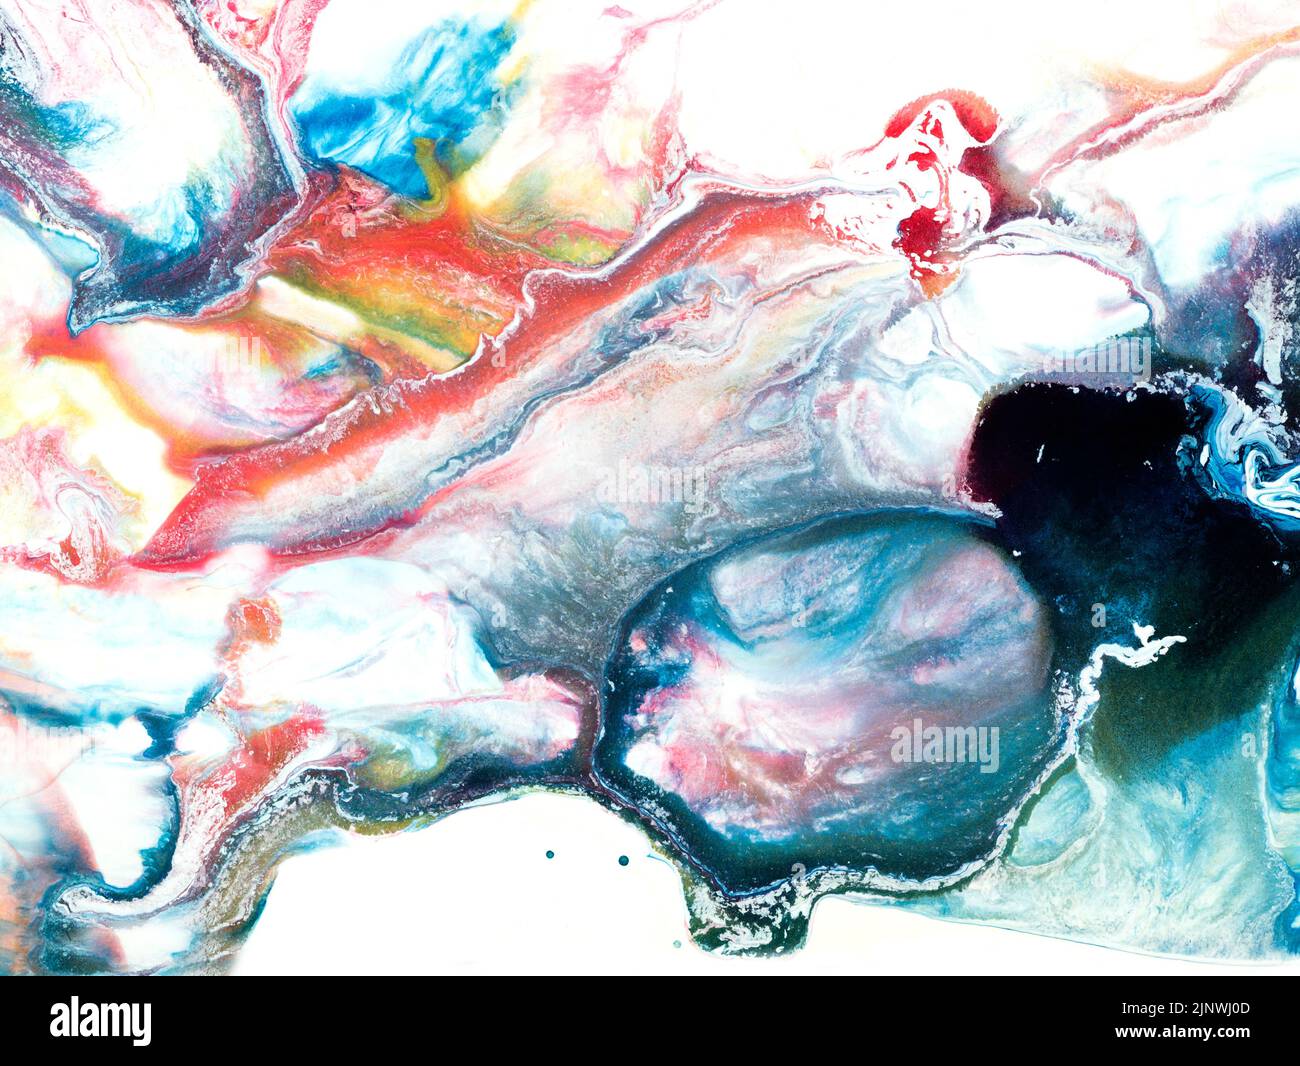 Peinture abstraite bleue et rose, arrière-plan peint à la main, texture en marbre, océan abstrait, peinture acrylique sur toile. Art moderne contemporain Banque D'Images